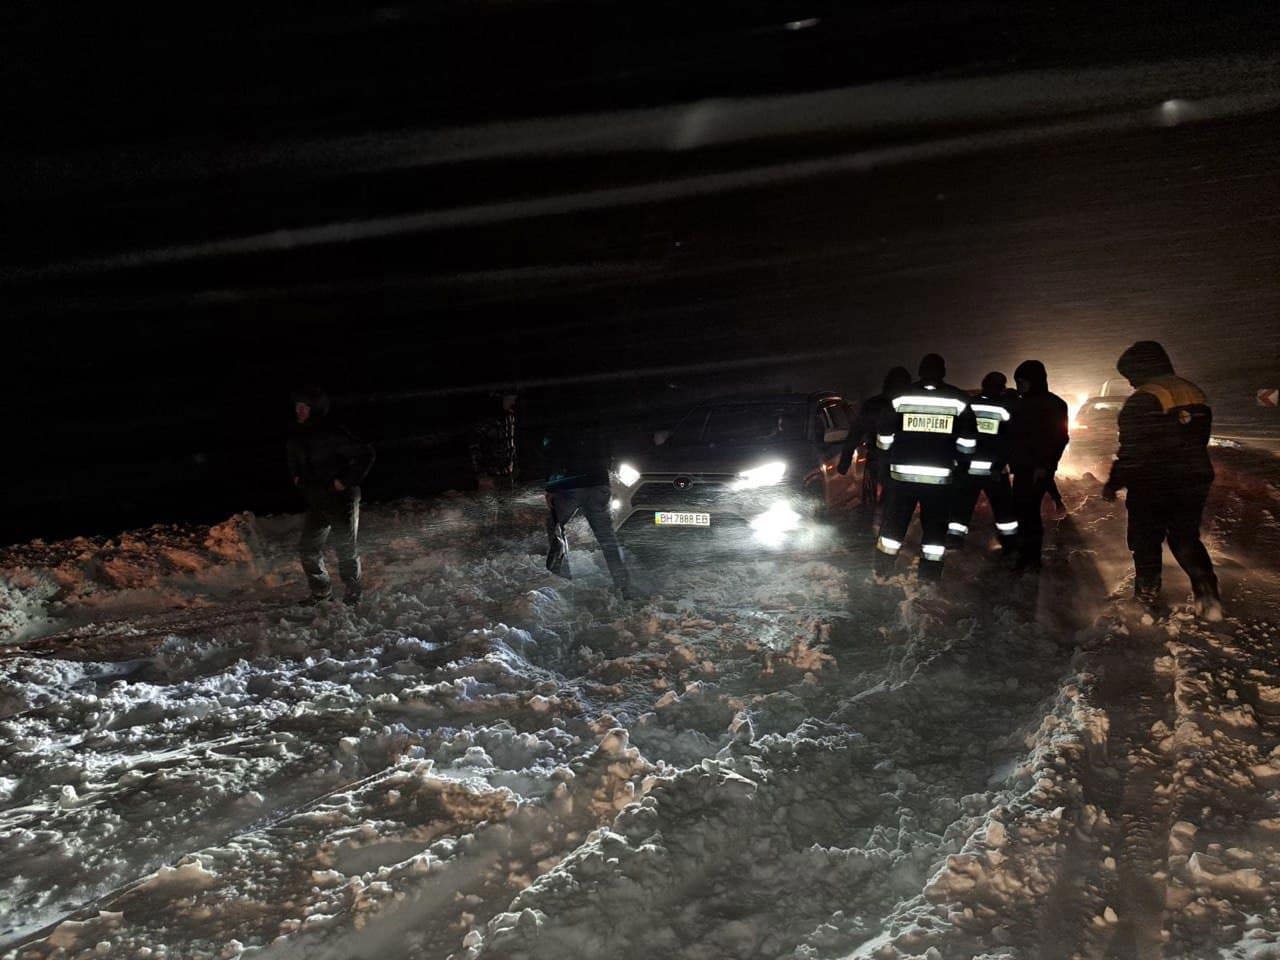 Автомобили и машины скорой помощи, застрявшие на юге из-за снегопада. Вмешательство спасателей за последние 24 часа